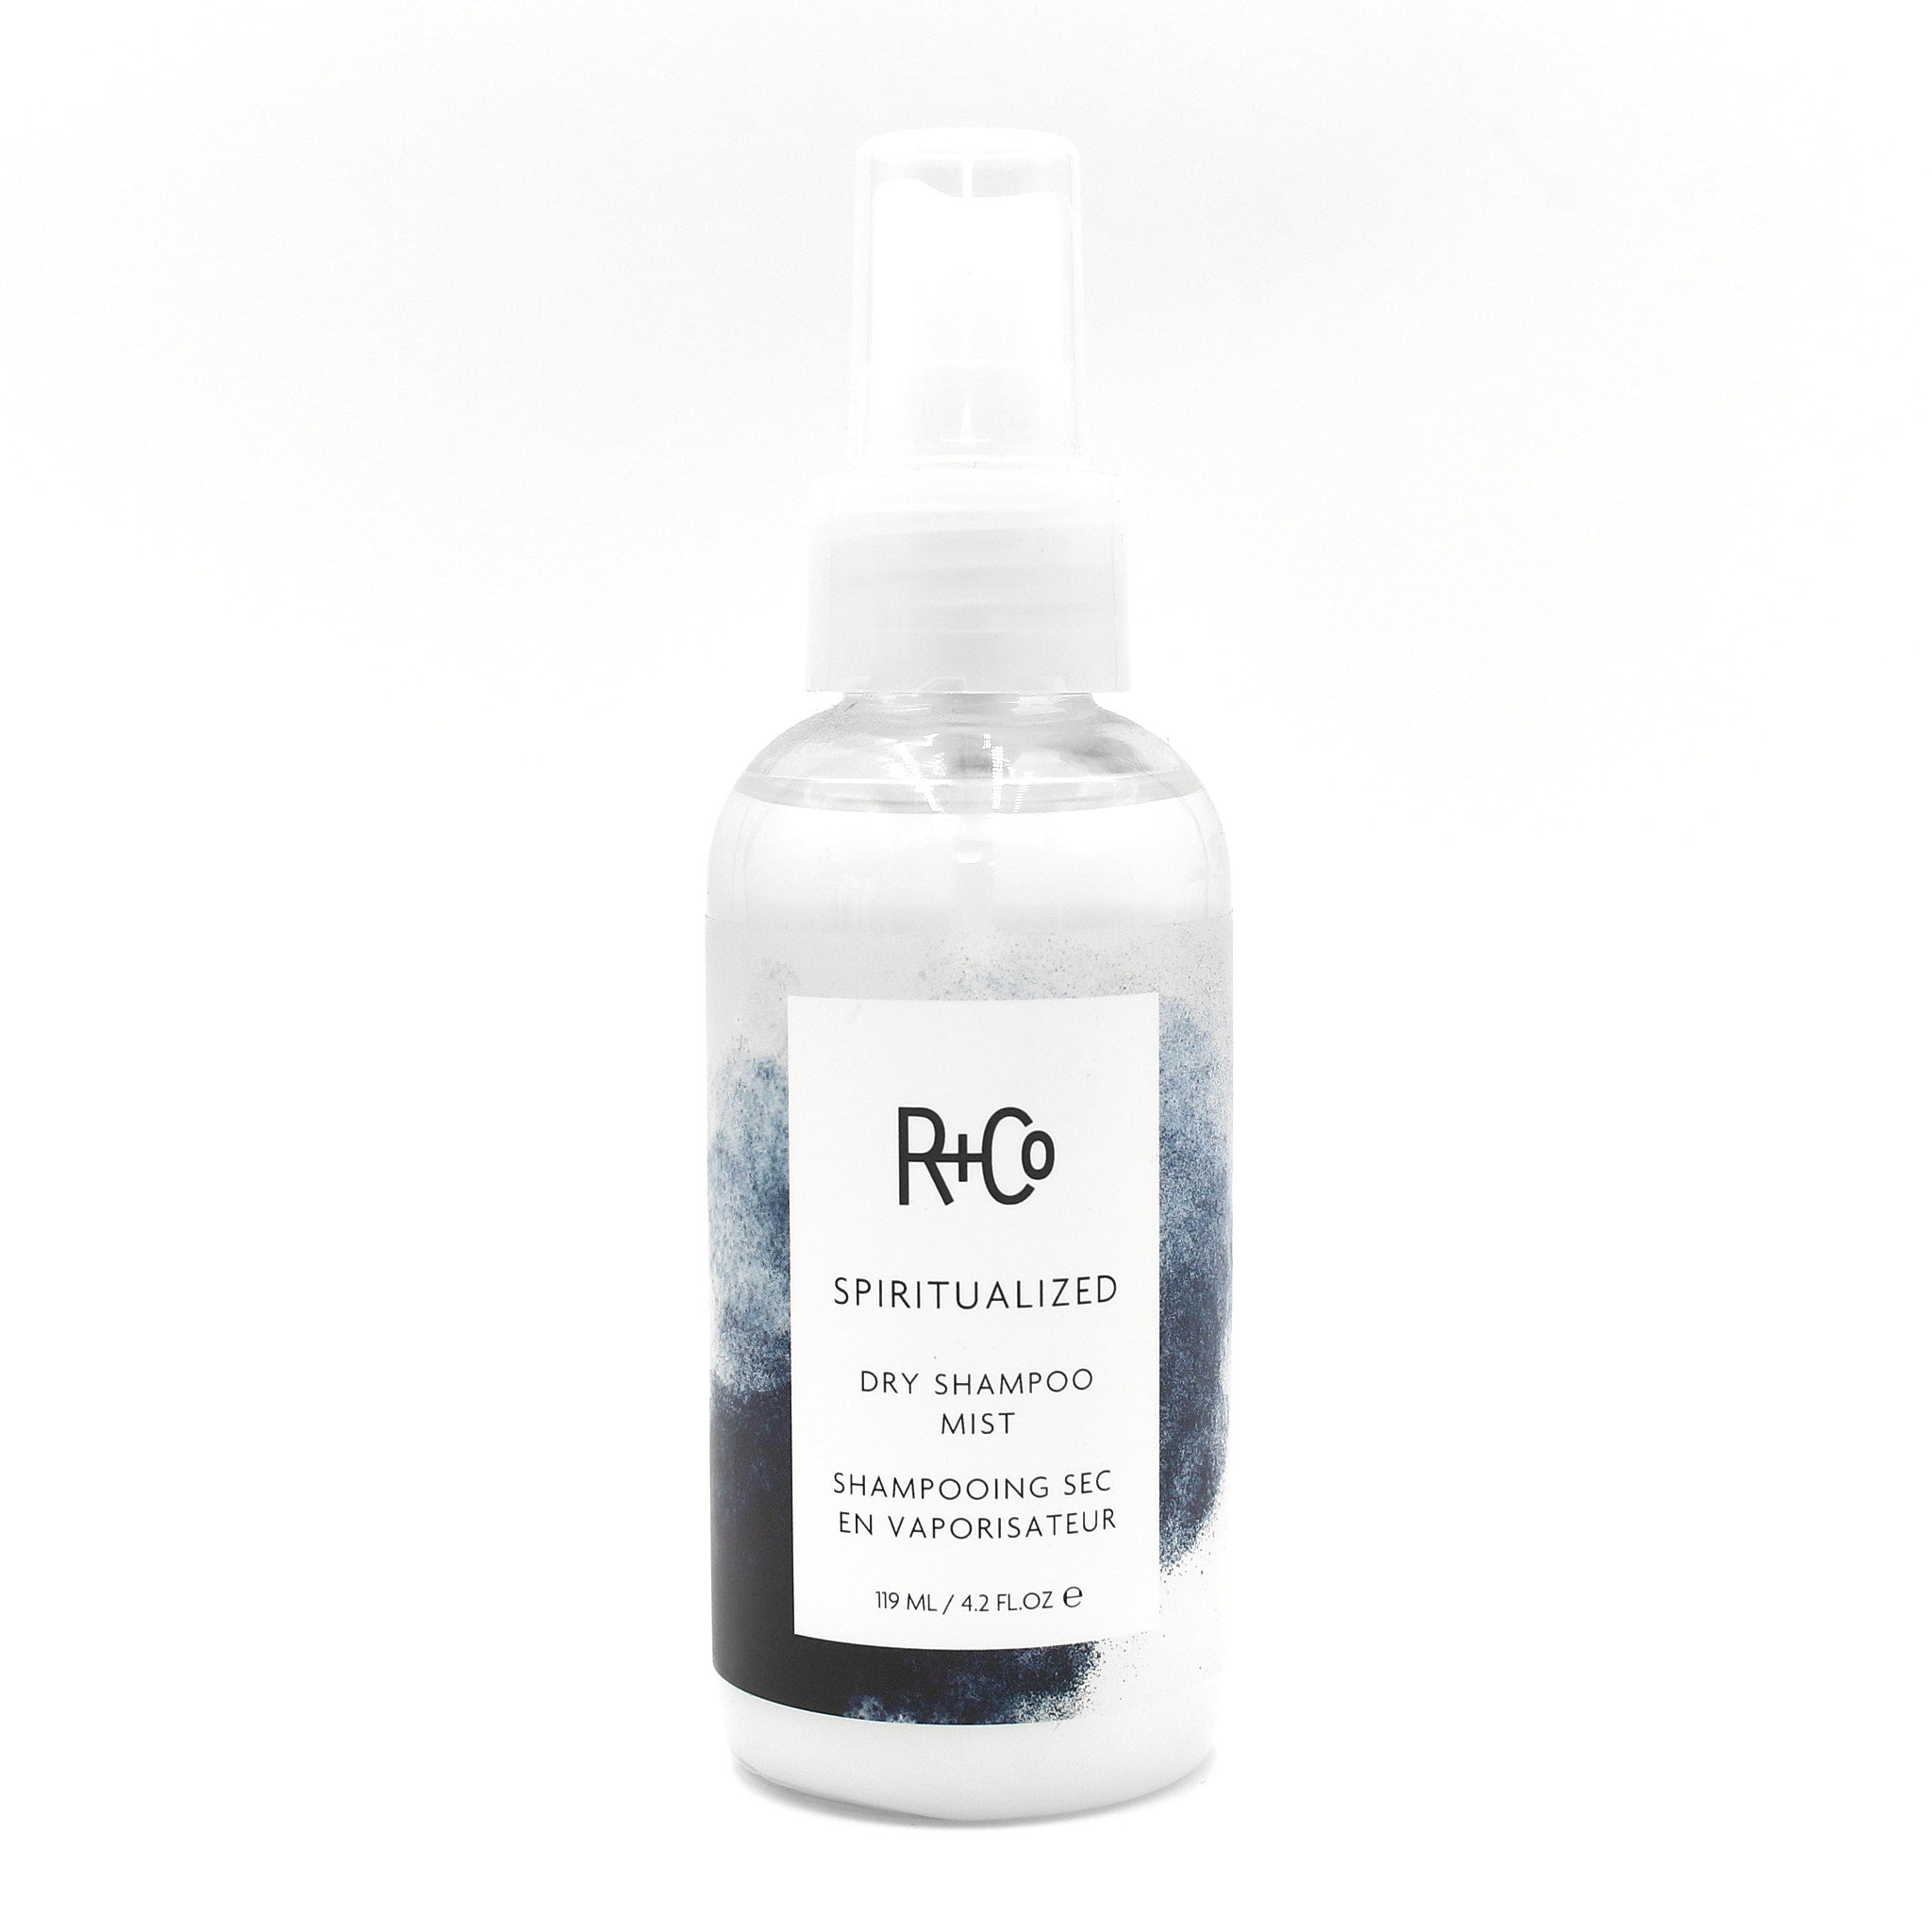 R+CO Spiritualized Dry Shampoo Mist 4.2 oz